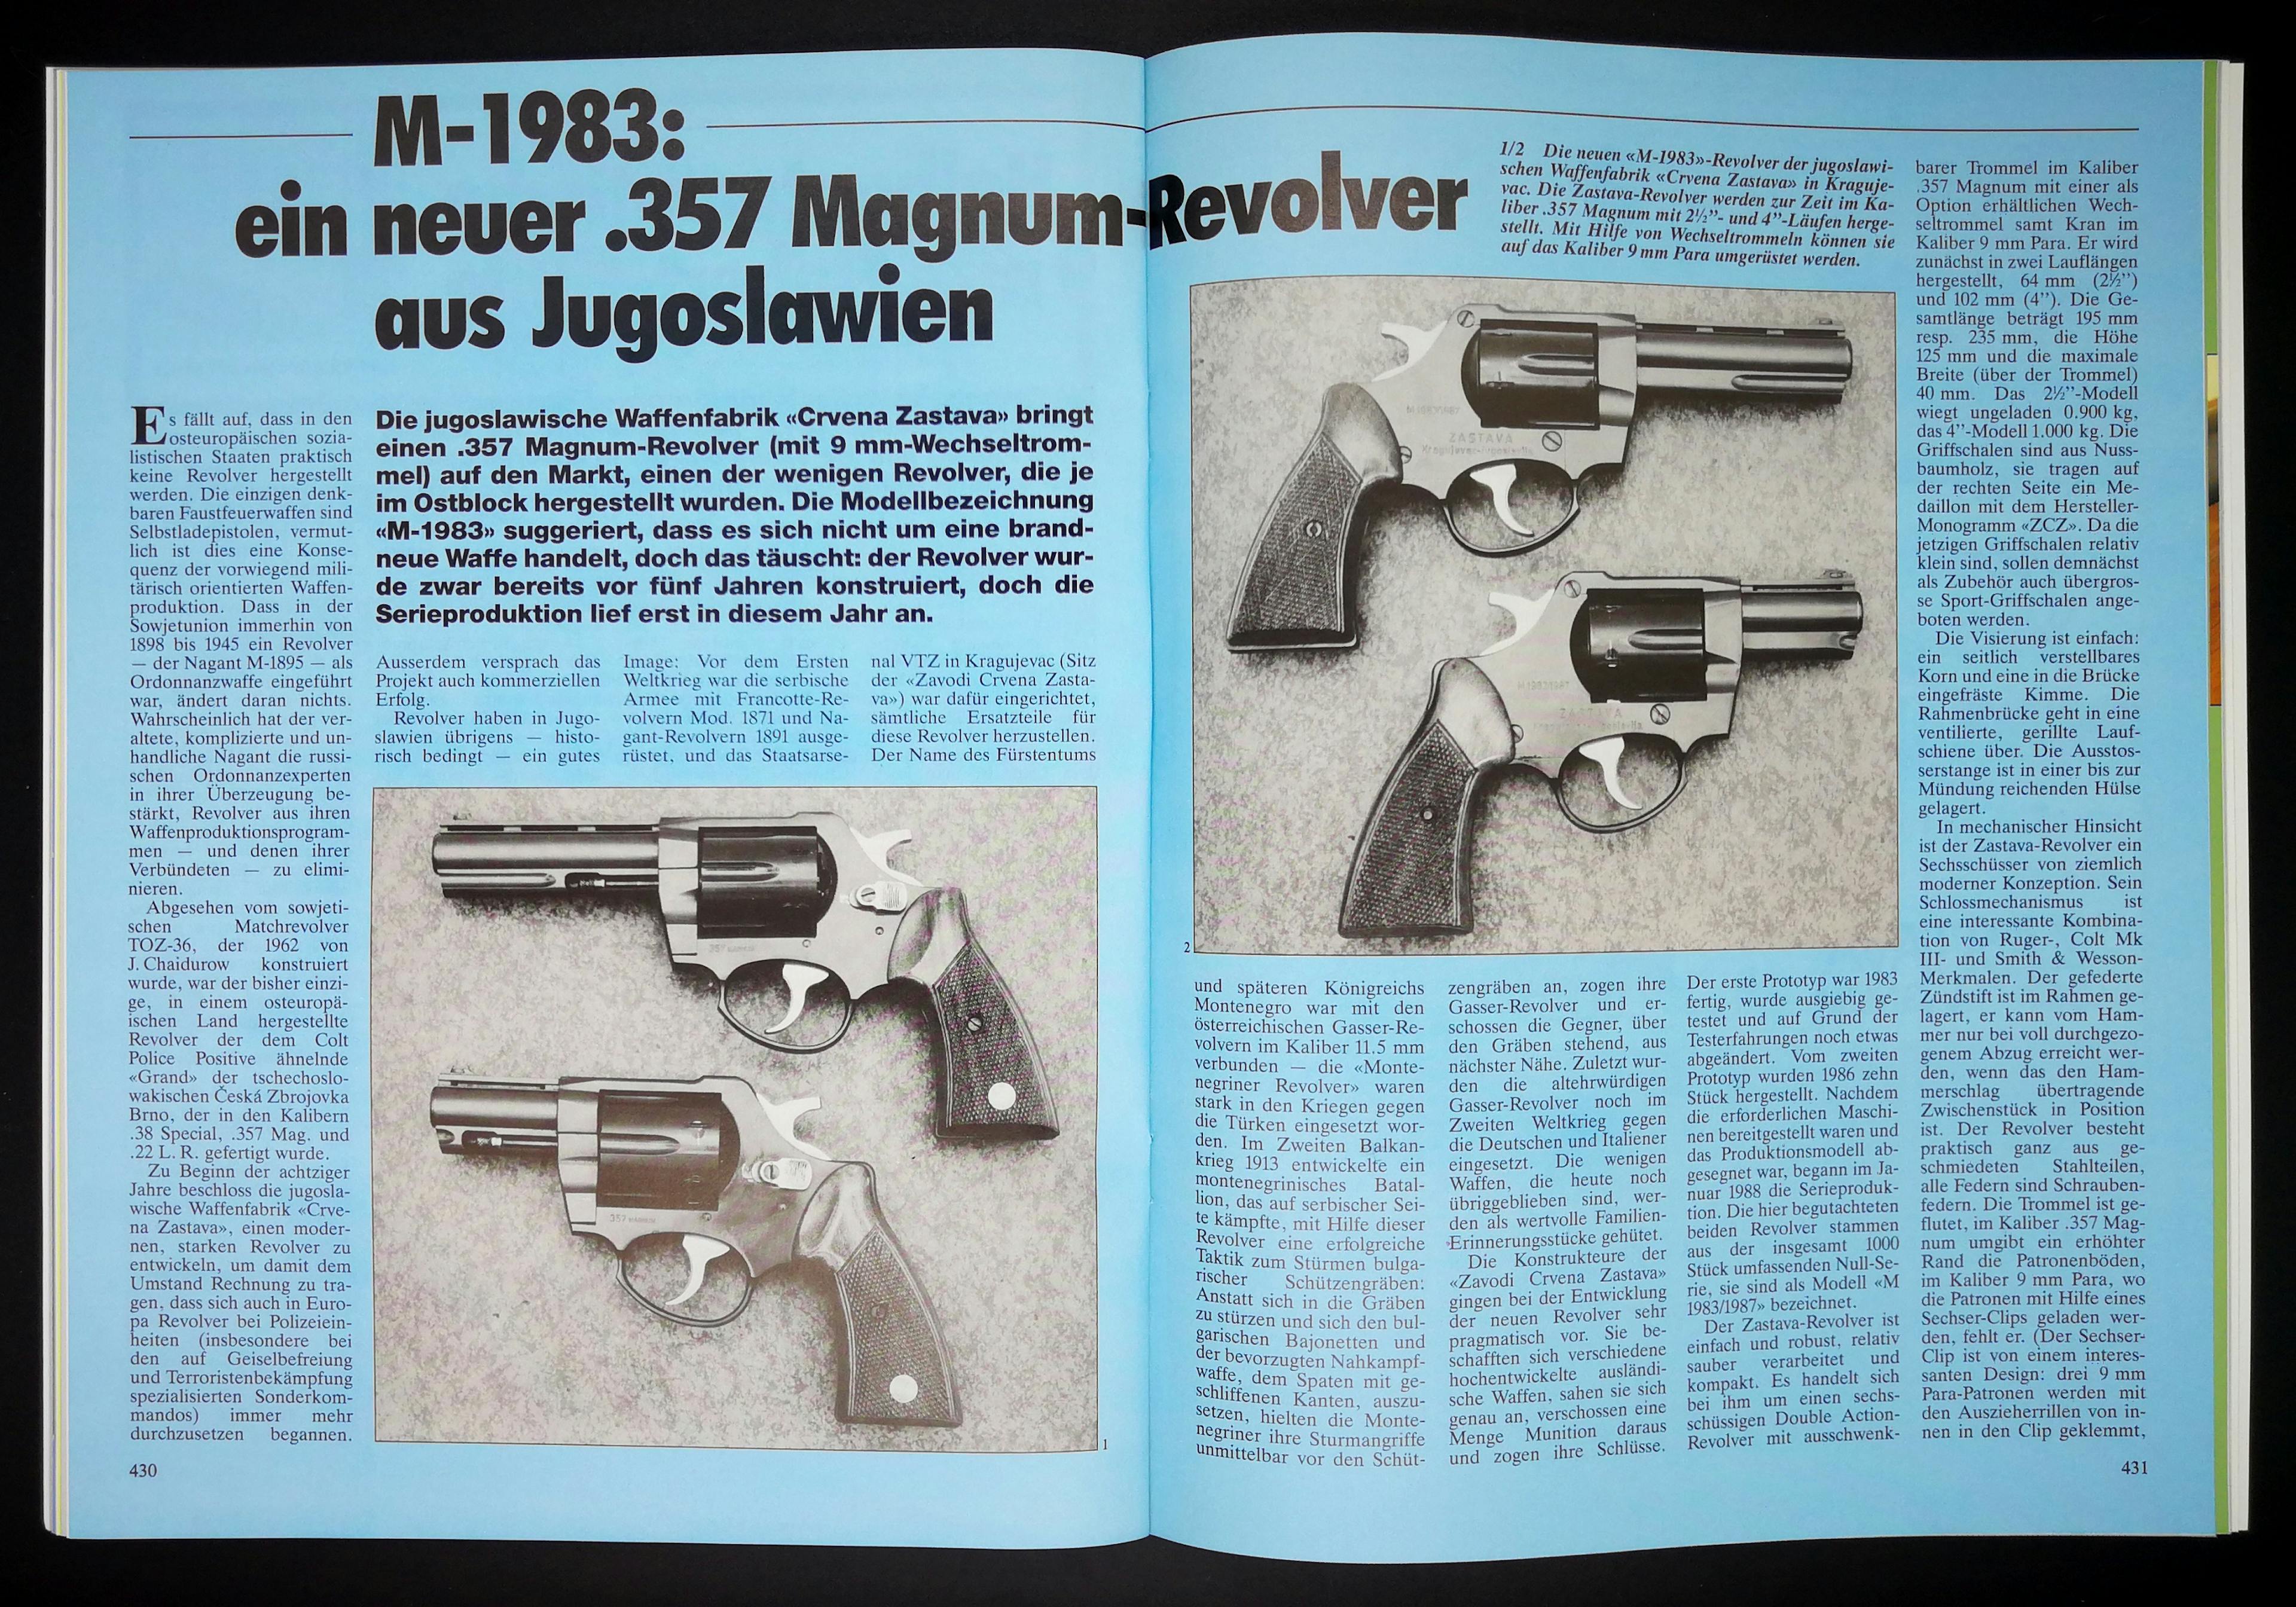 Zastava war halt früher Jugoslavisch, die Revolver von ihnen sind eher unbekannt.
